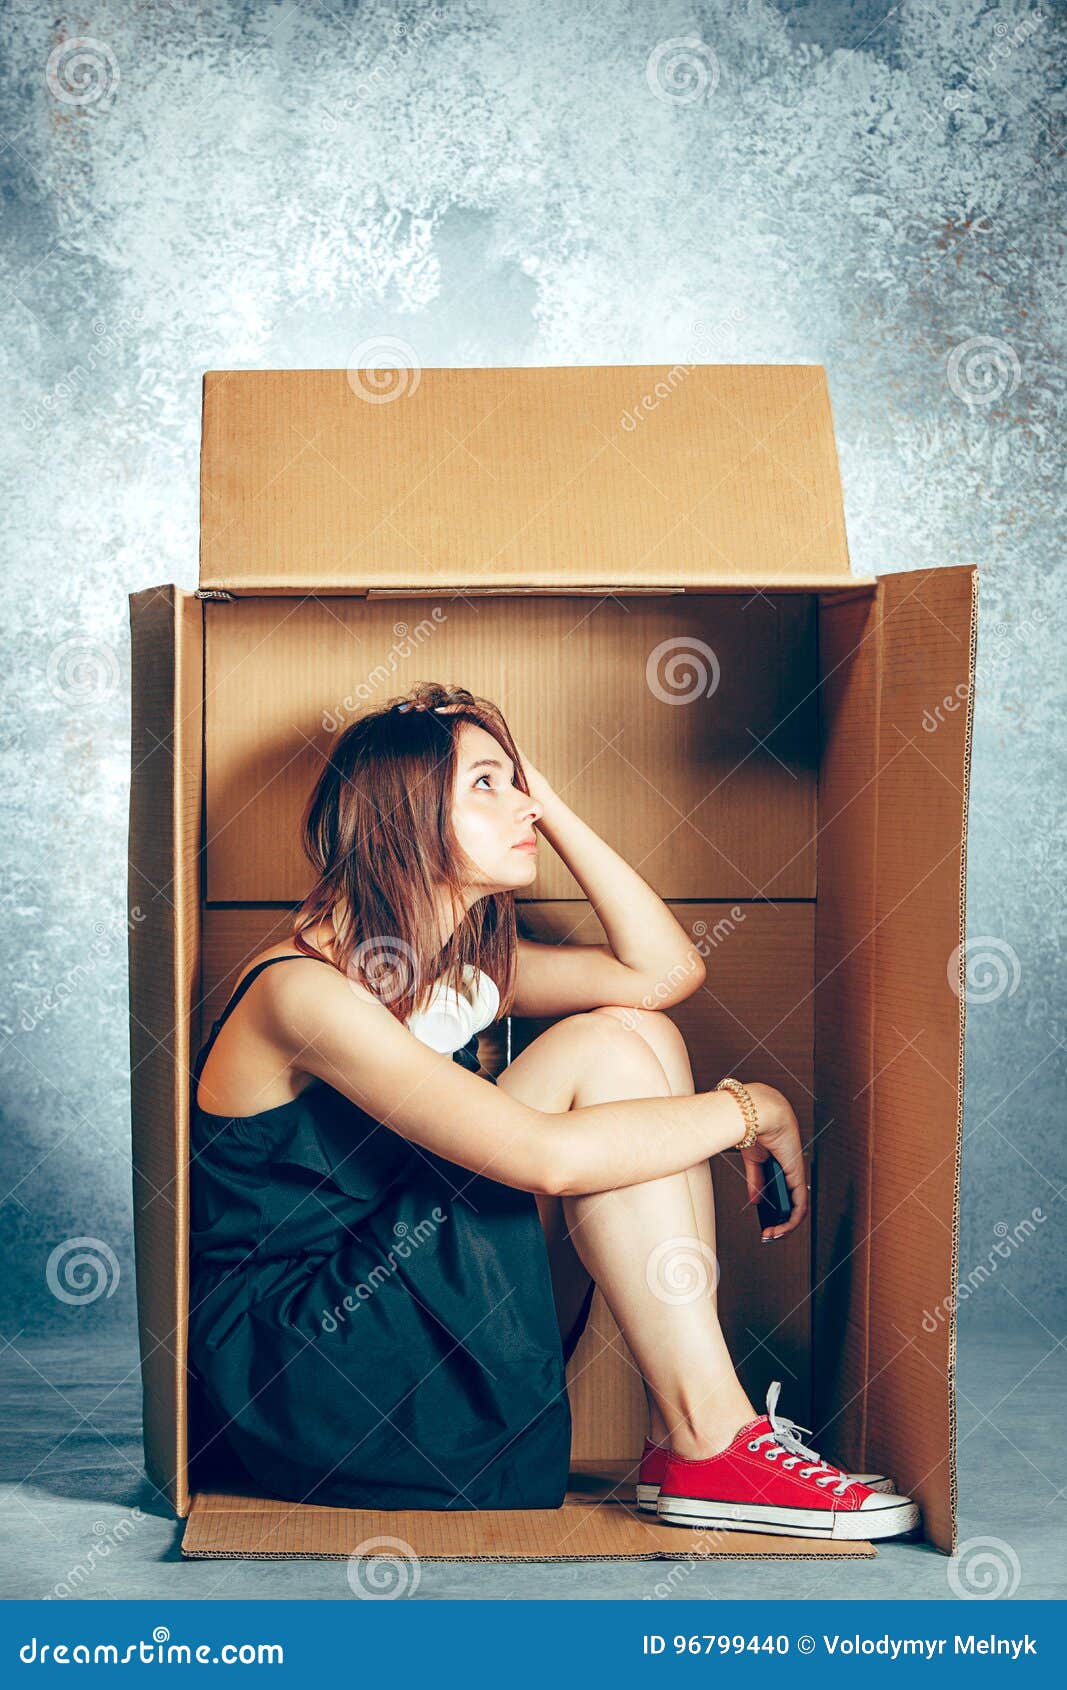 Mano de mujer poniendo muchas cajas pequeñas de cartón dentro de una caja  grande con tapa